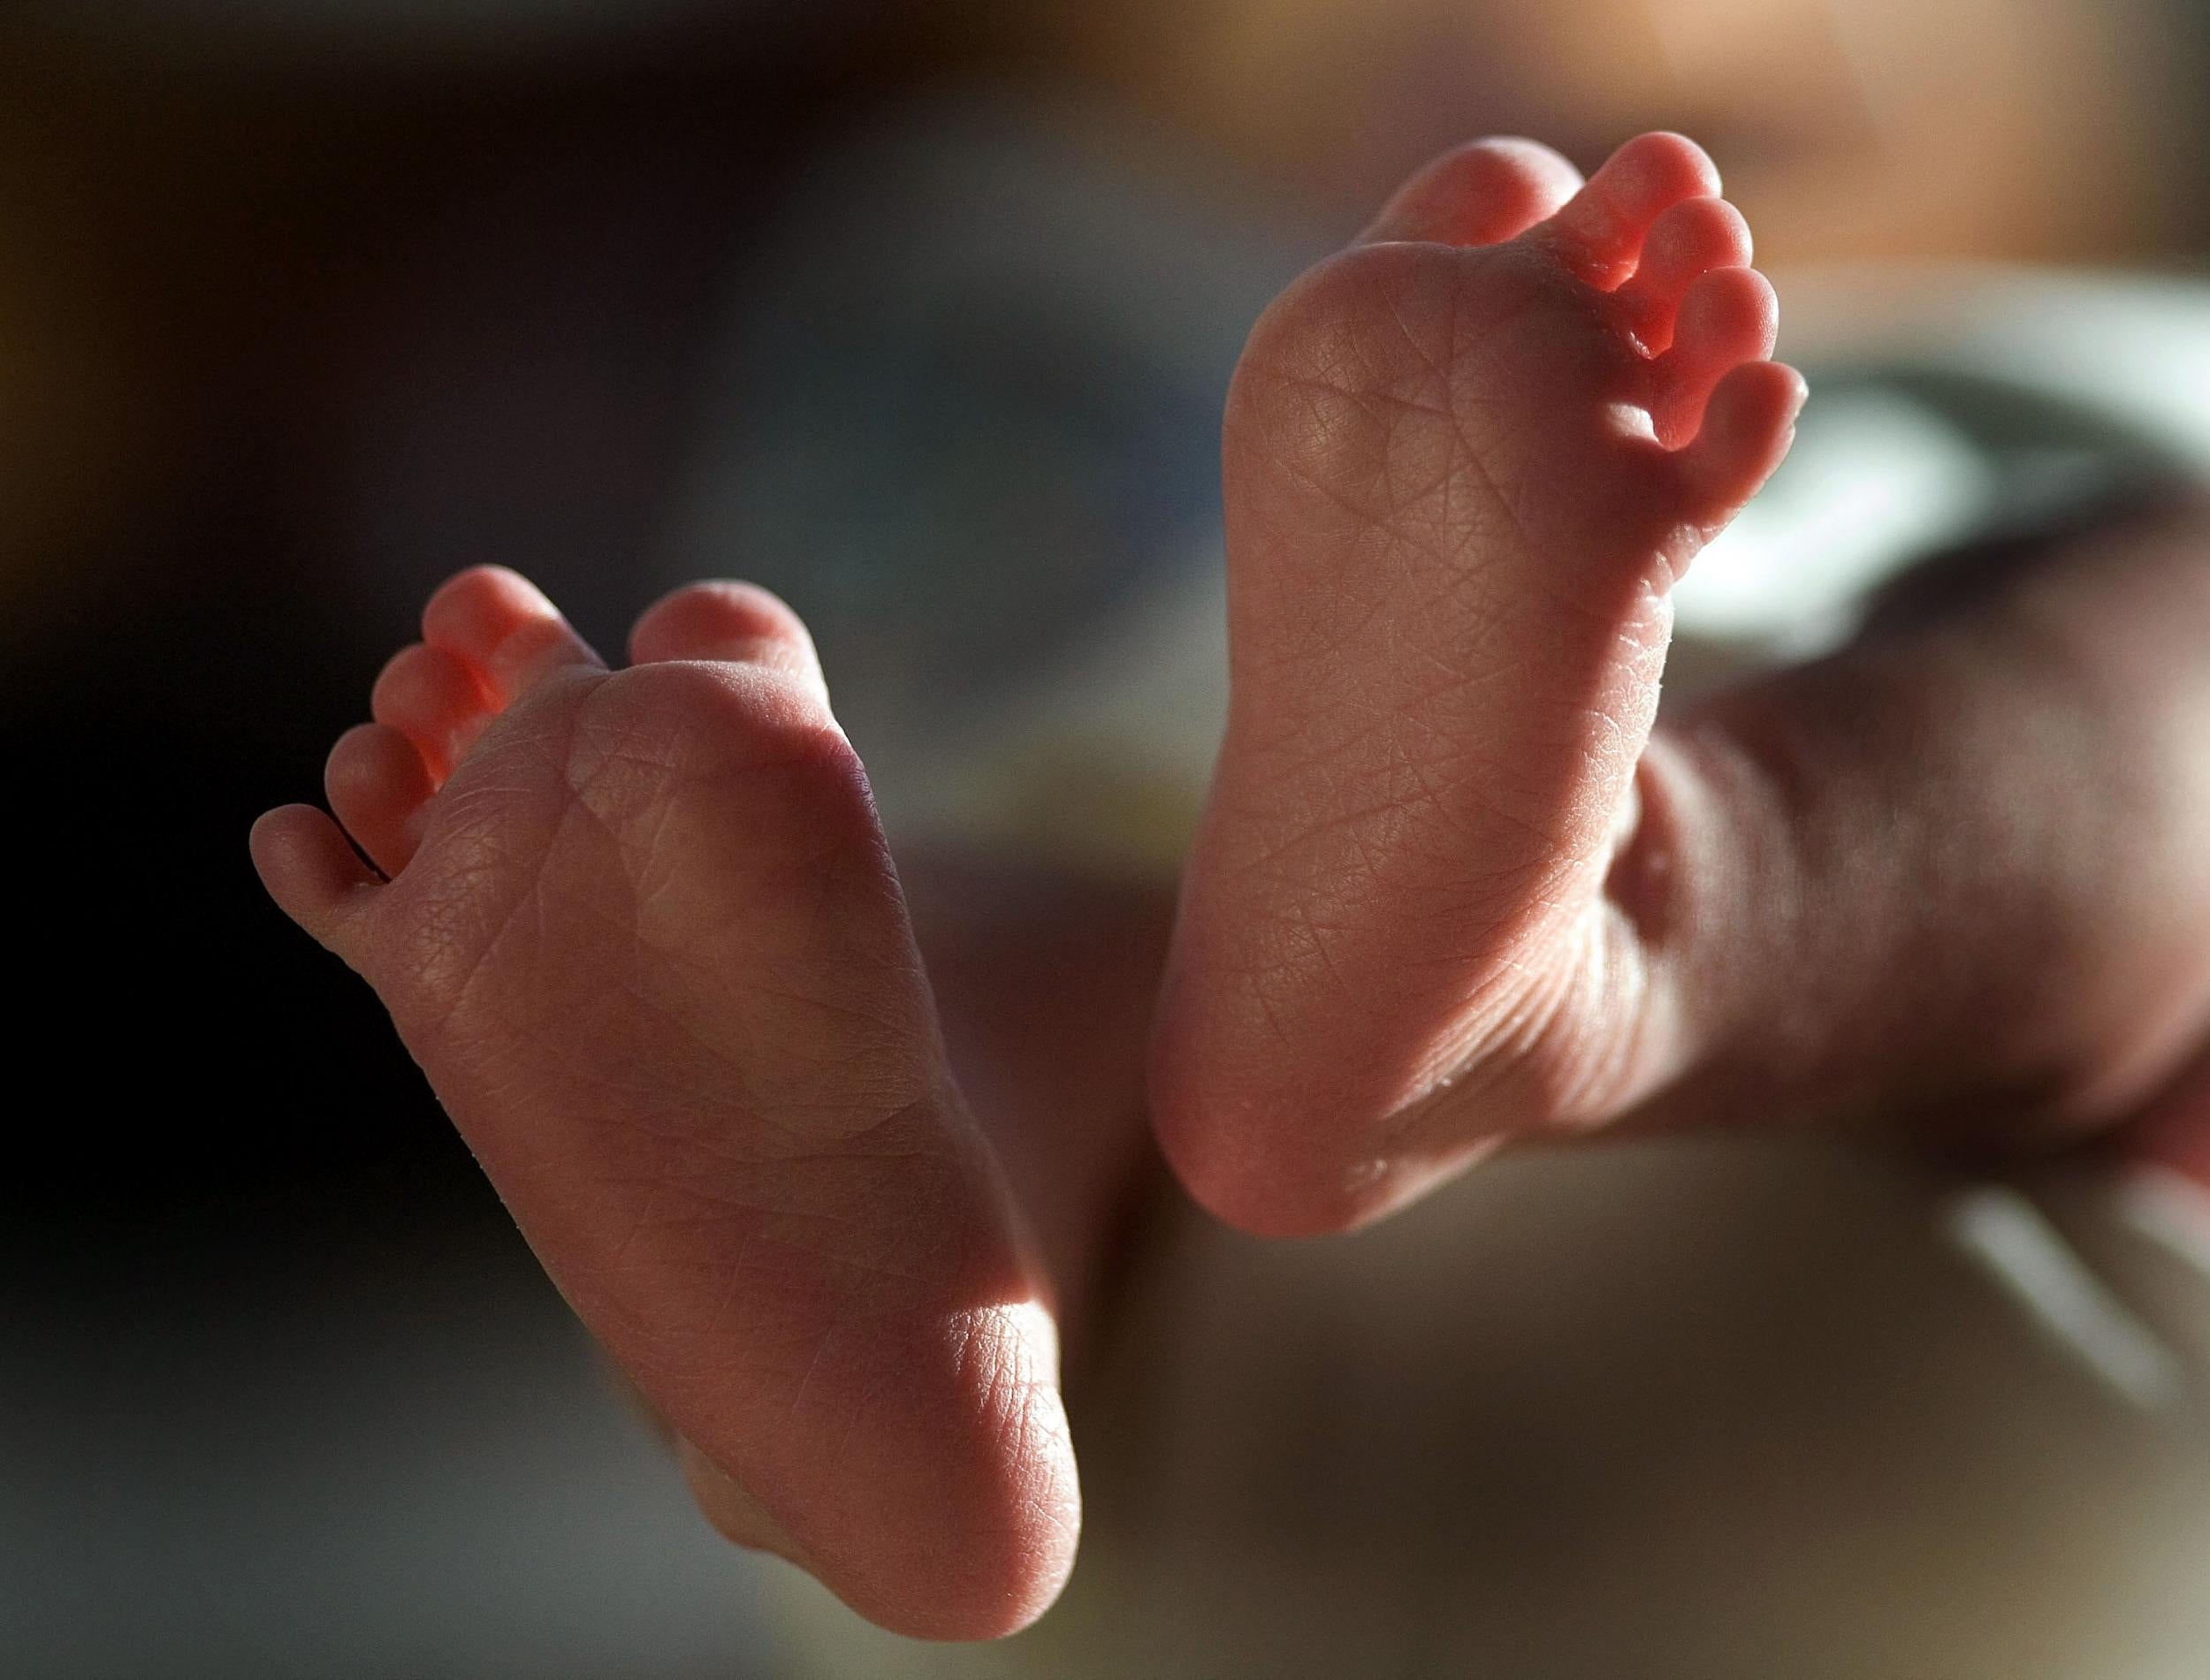 The baby boy died at Bristol Children's Hospital